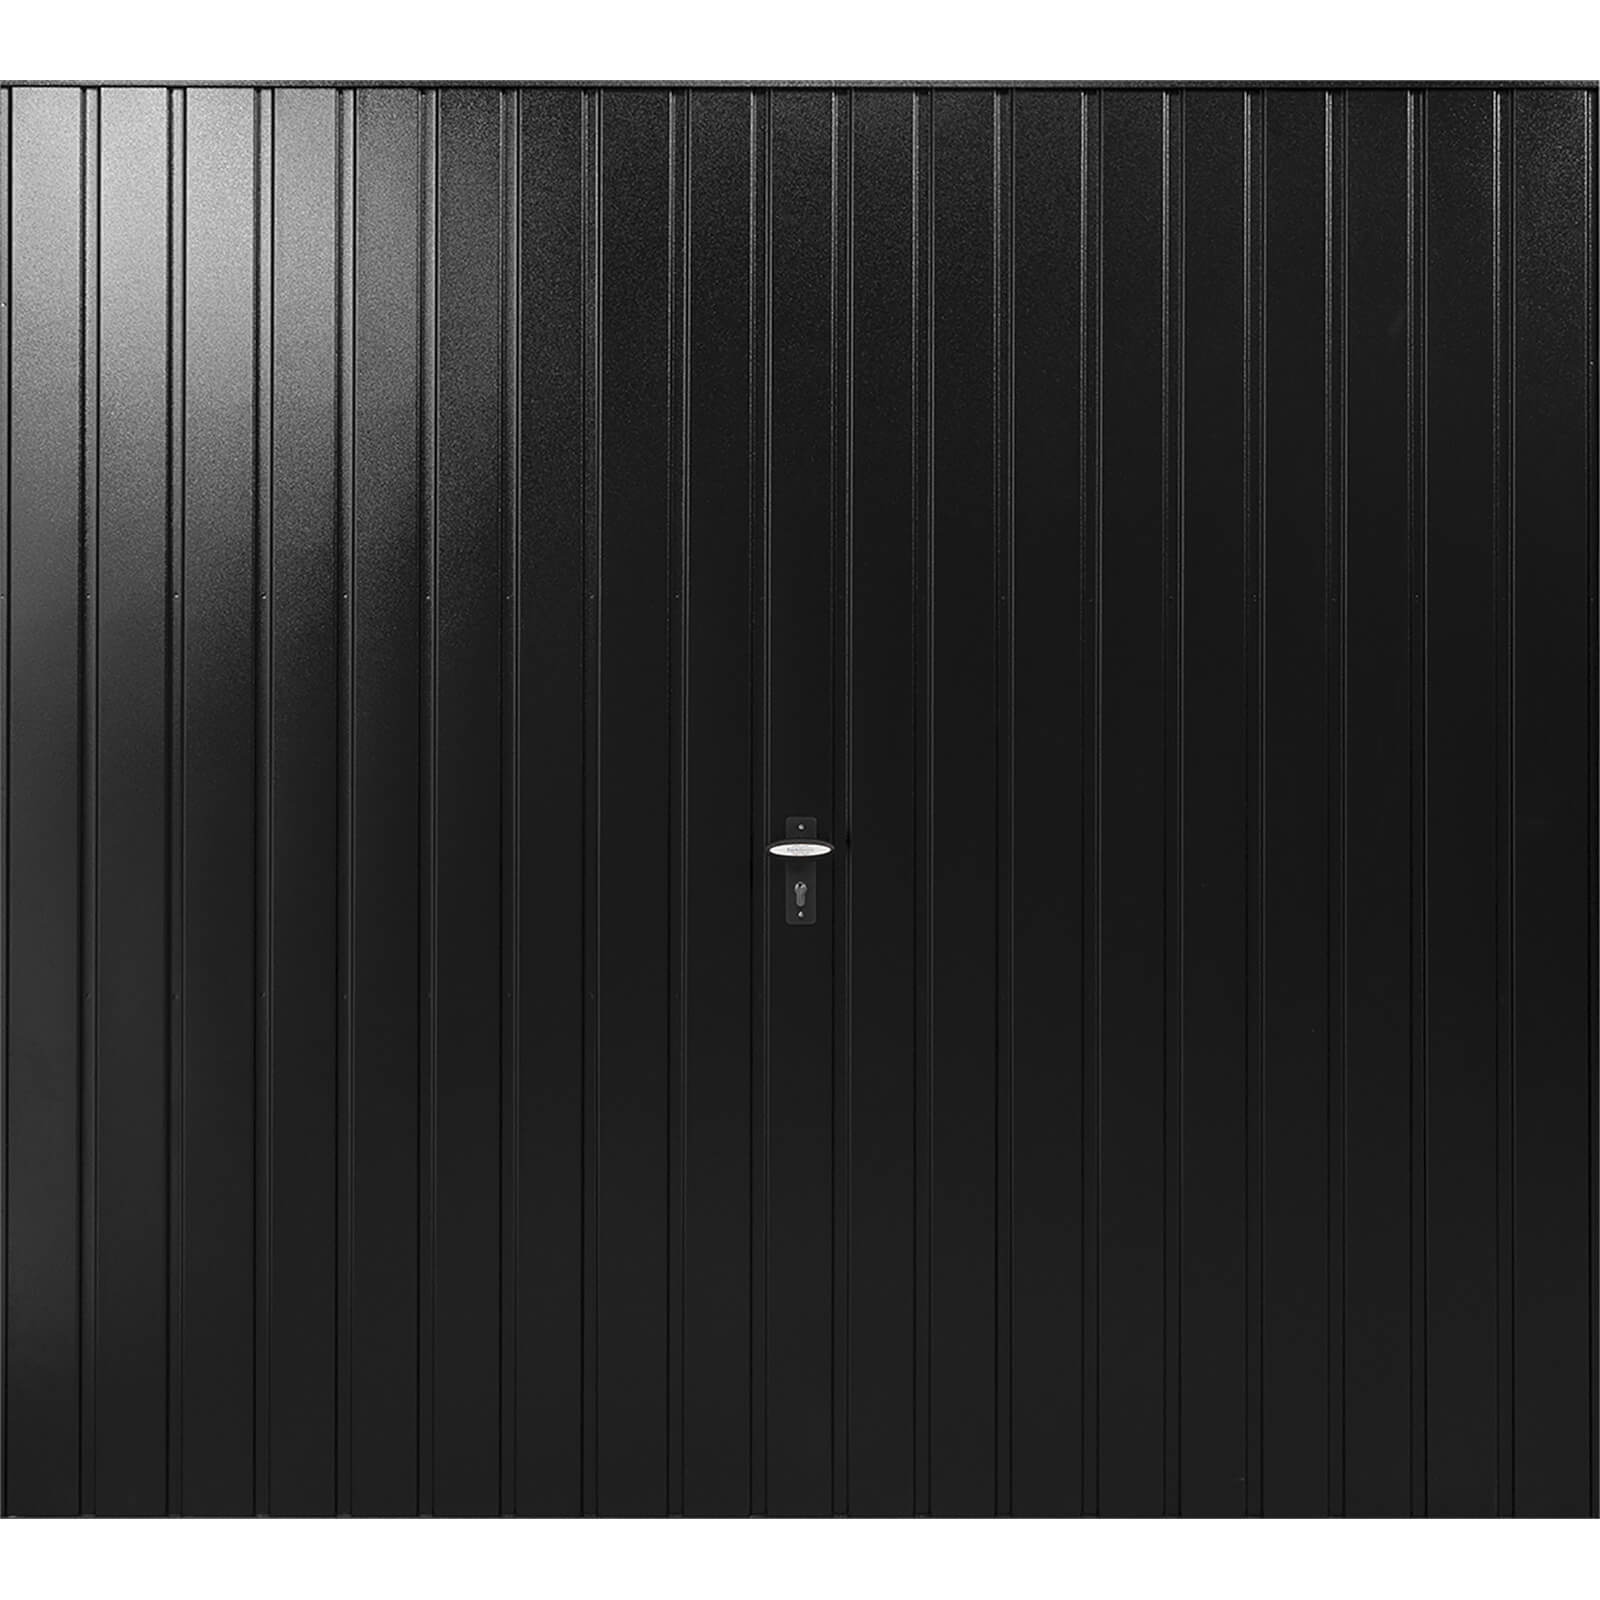 Vertical 7' x 7' Frameless Steel Garage Door Black